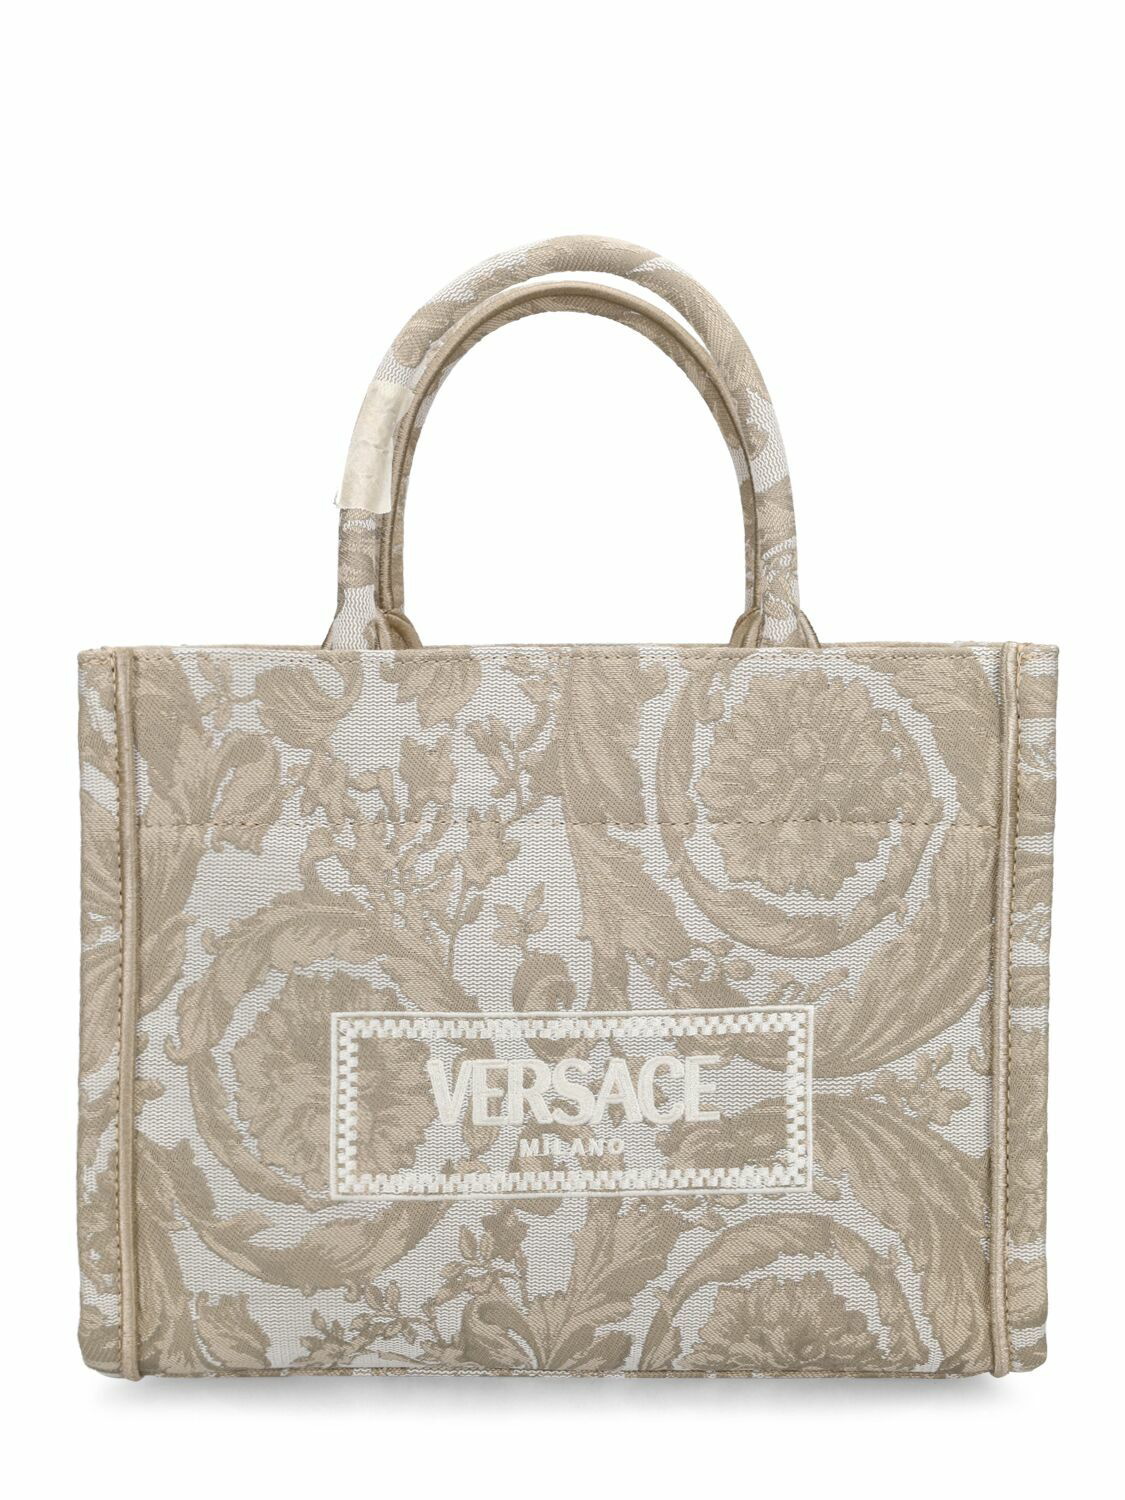 VERSACE - Small Barocco Jacquard Tote Bag Versace